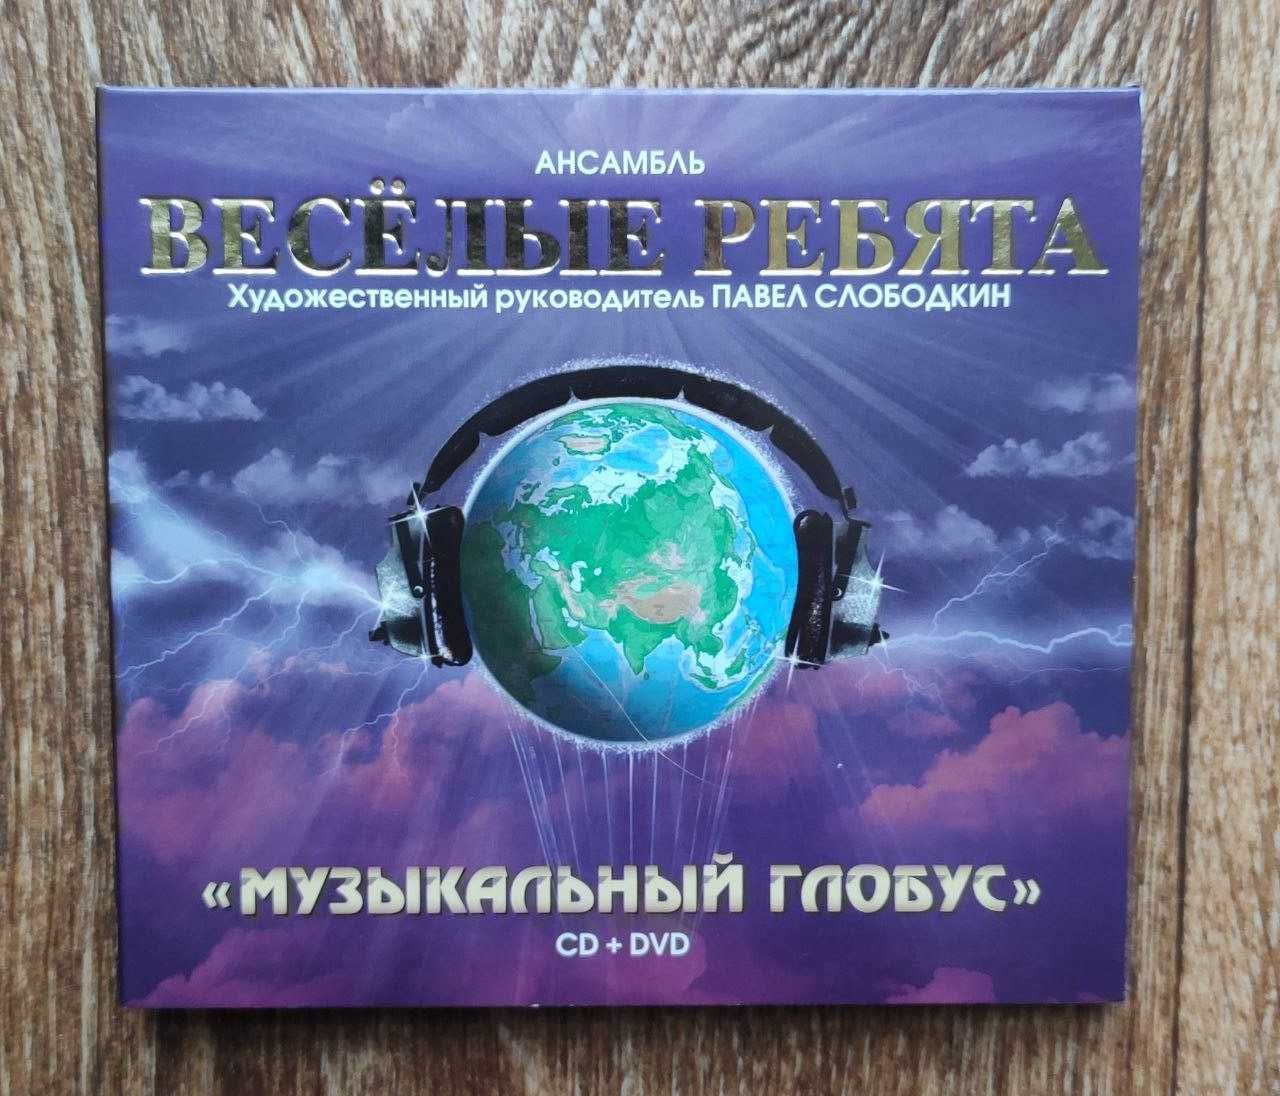 CD + DVD диск Весёлые ребята "Музыкальный глобус" IFPI Новый.